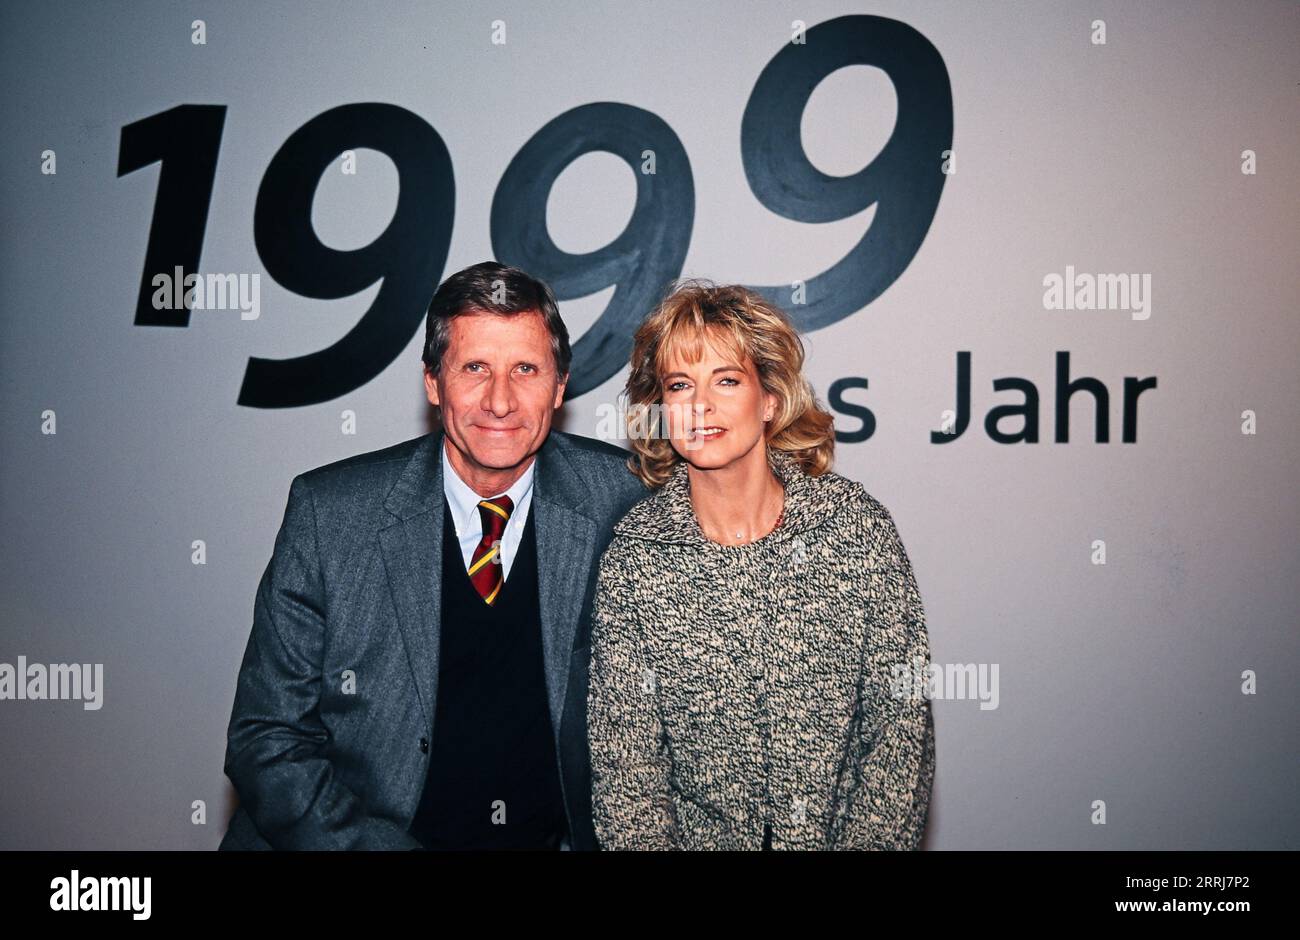 Ulrich Uli Wickert, deutscher Journalist, Autor und Moderator, mit Kollegin Hannelore Hansi Fischer beim ARD Jahresrückblick 1999. Stock Photo